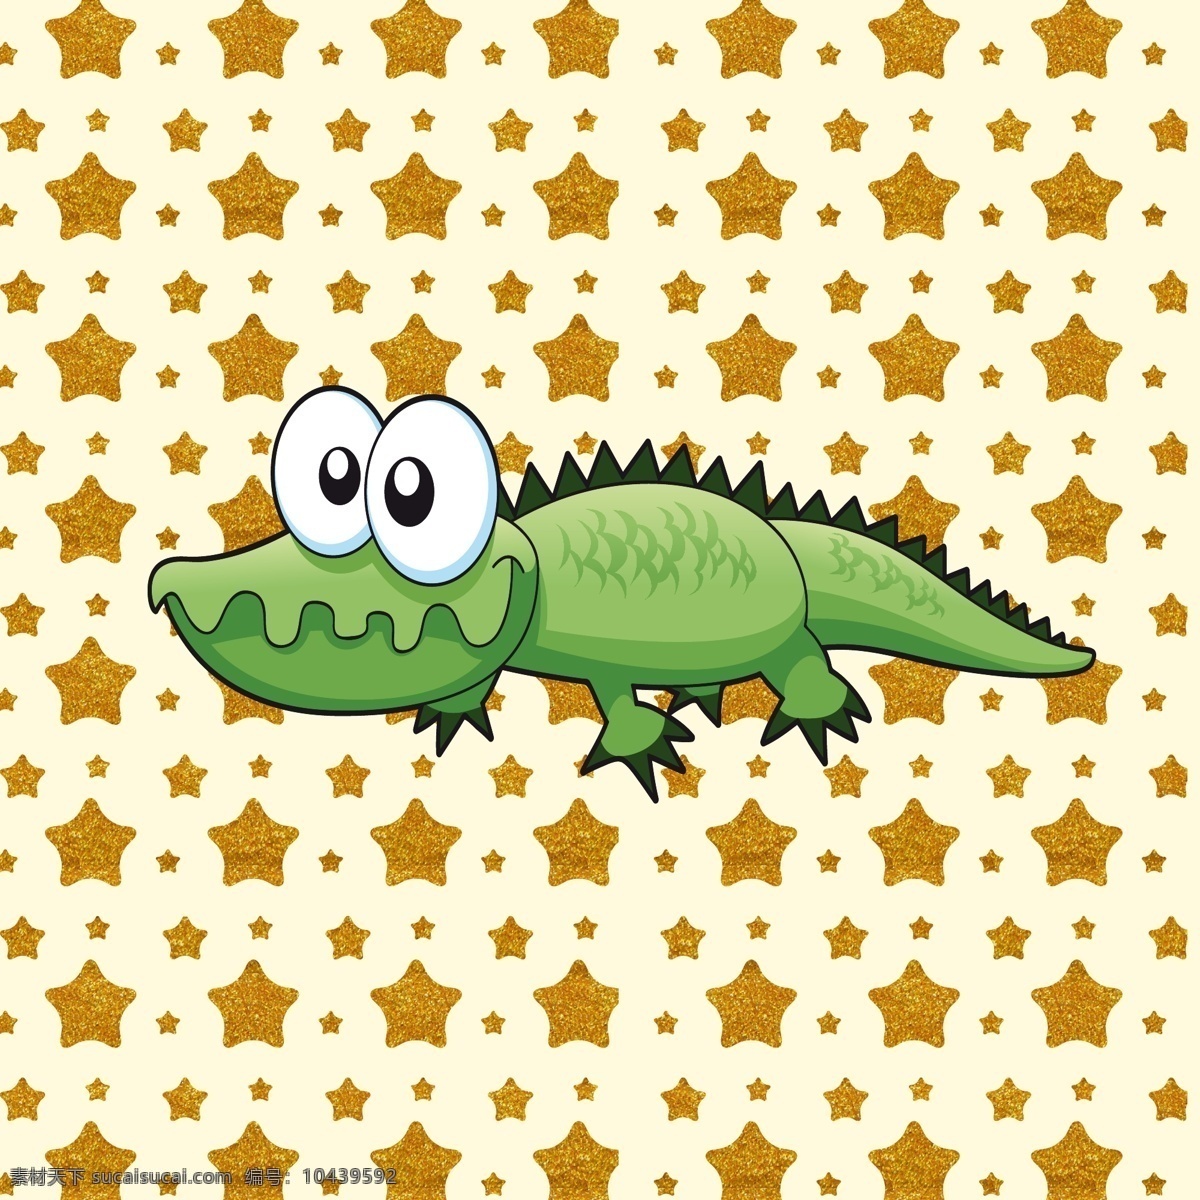 可爱 鳄鱼 矢量图 背景 平面设计 动物 五角星 卡其色背景 黄色 金色 土黄色星星 卡通 儿童卡通